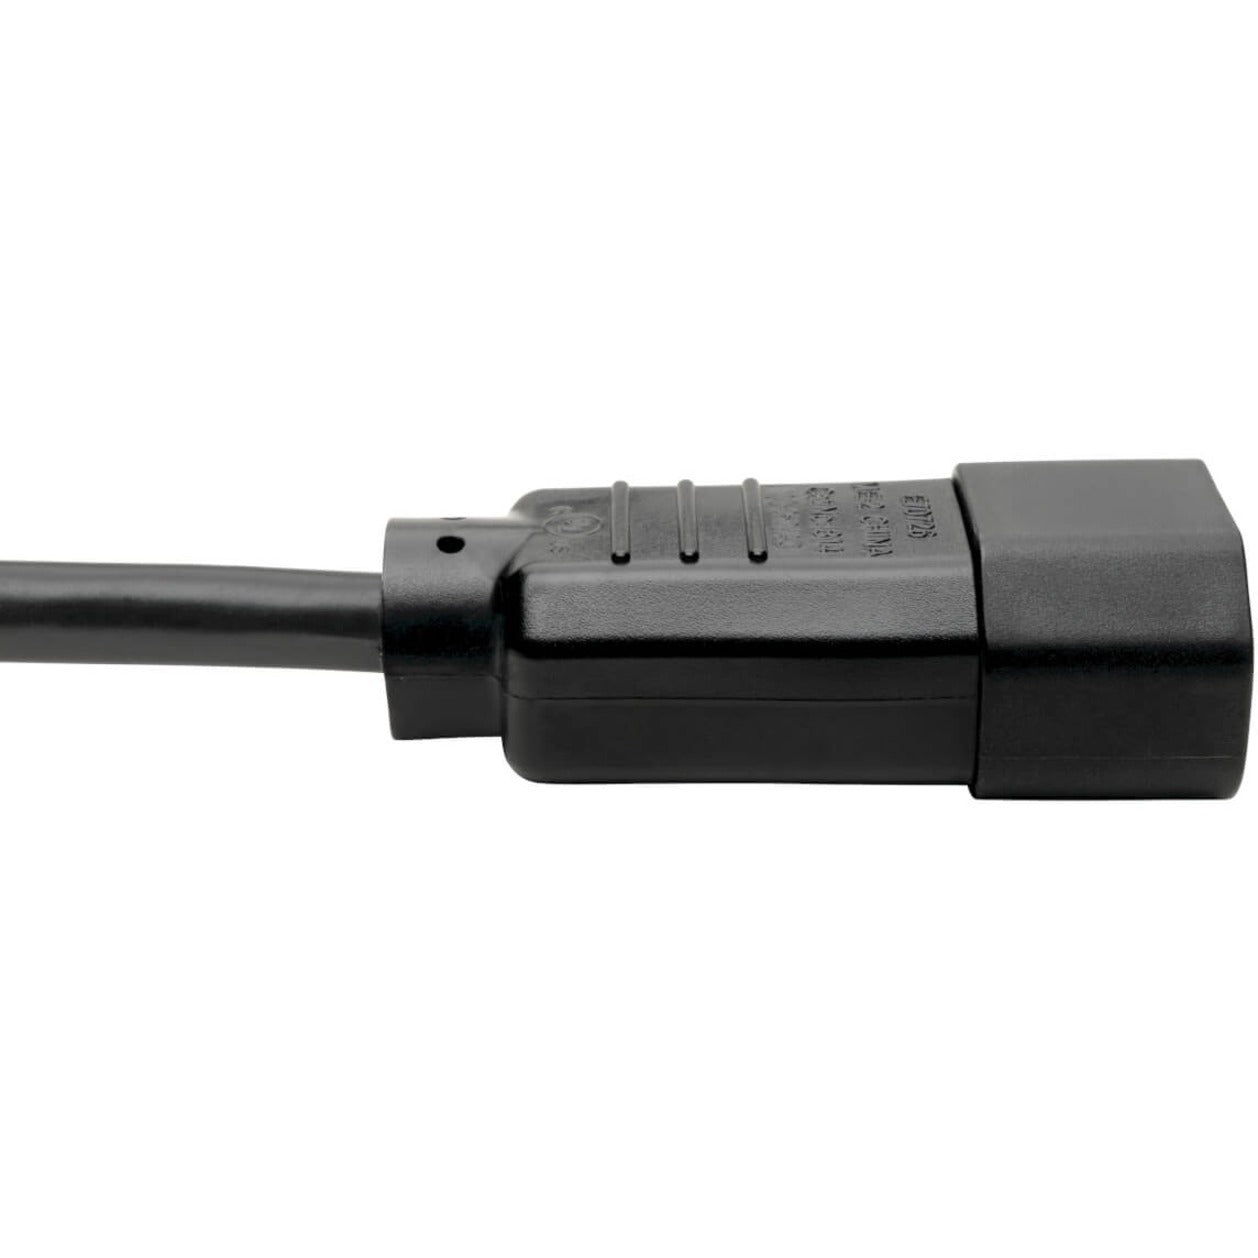 Tripp Lite P002-002 Power Converter Cable, 2 ft, Black